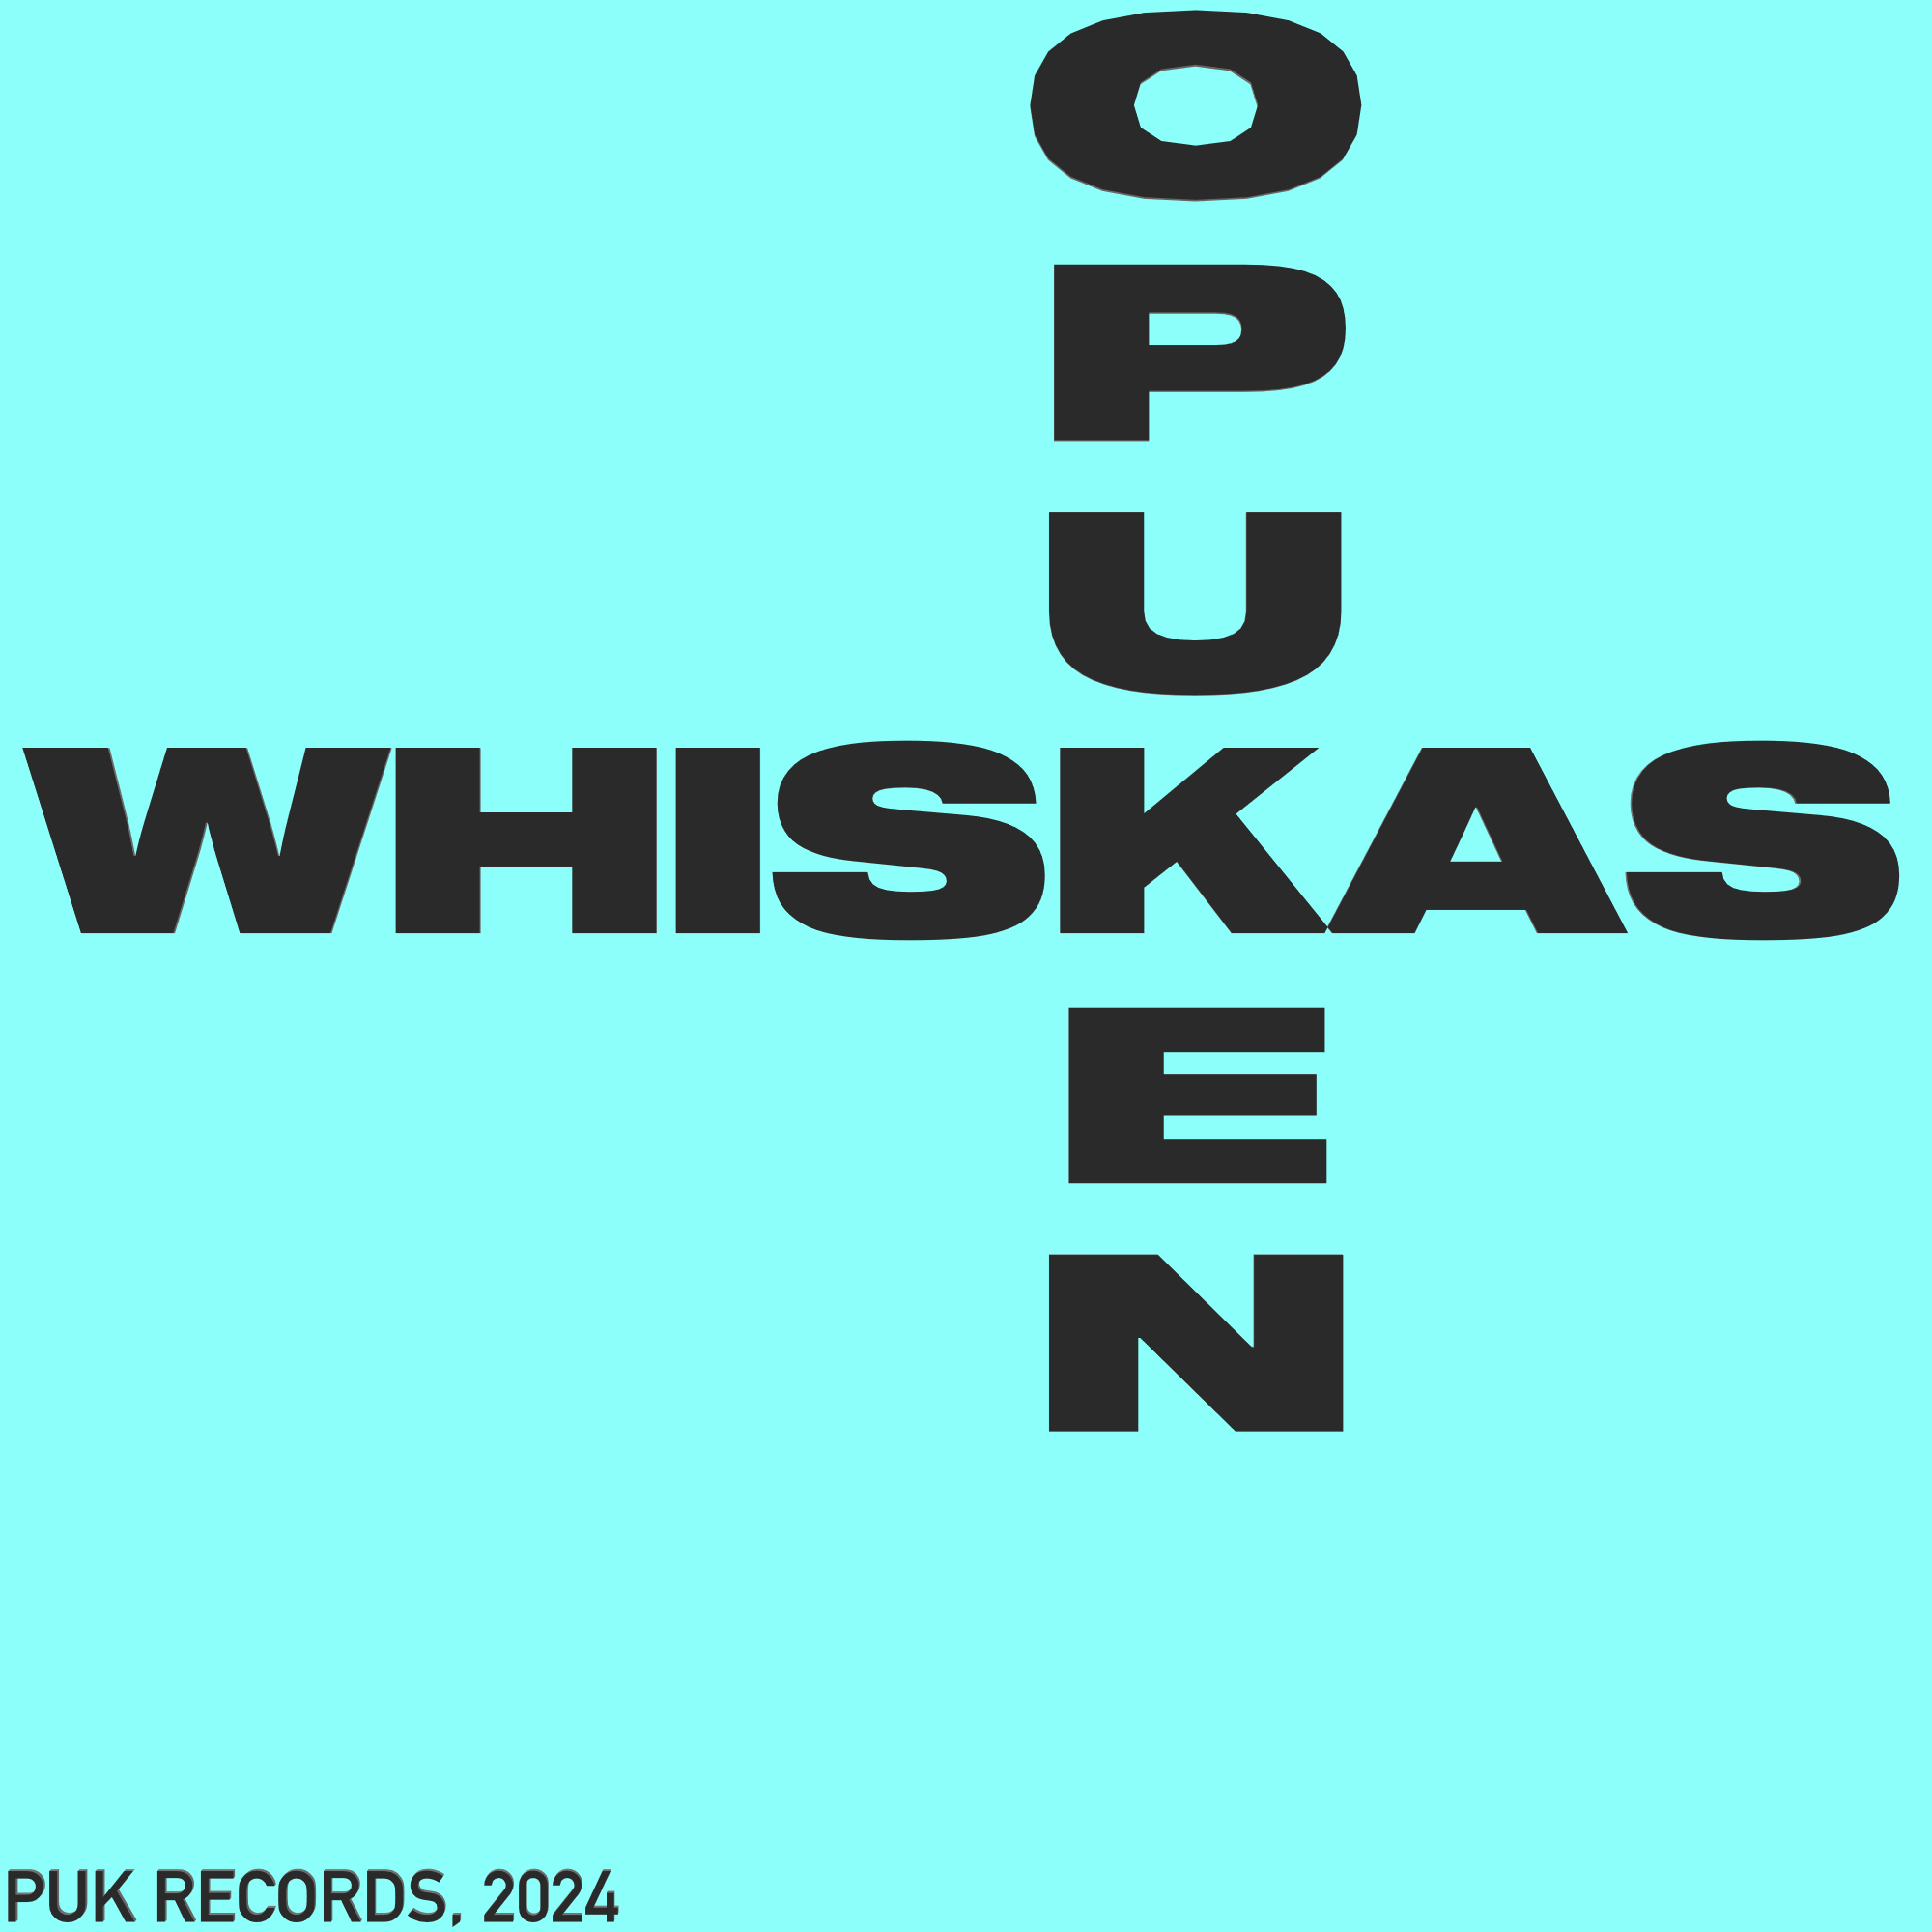 Whiskas OPUKEN cover artwork